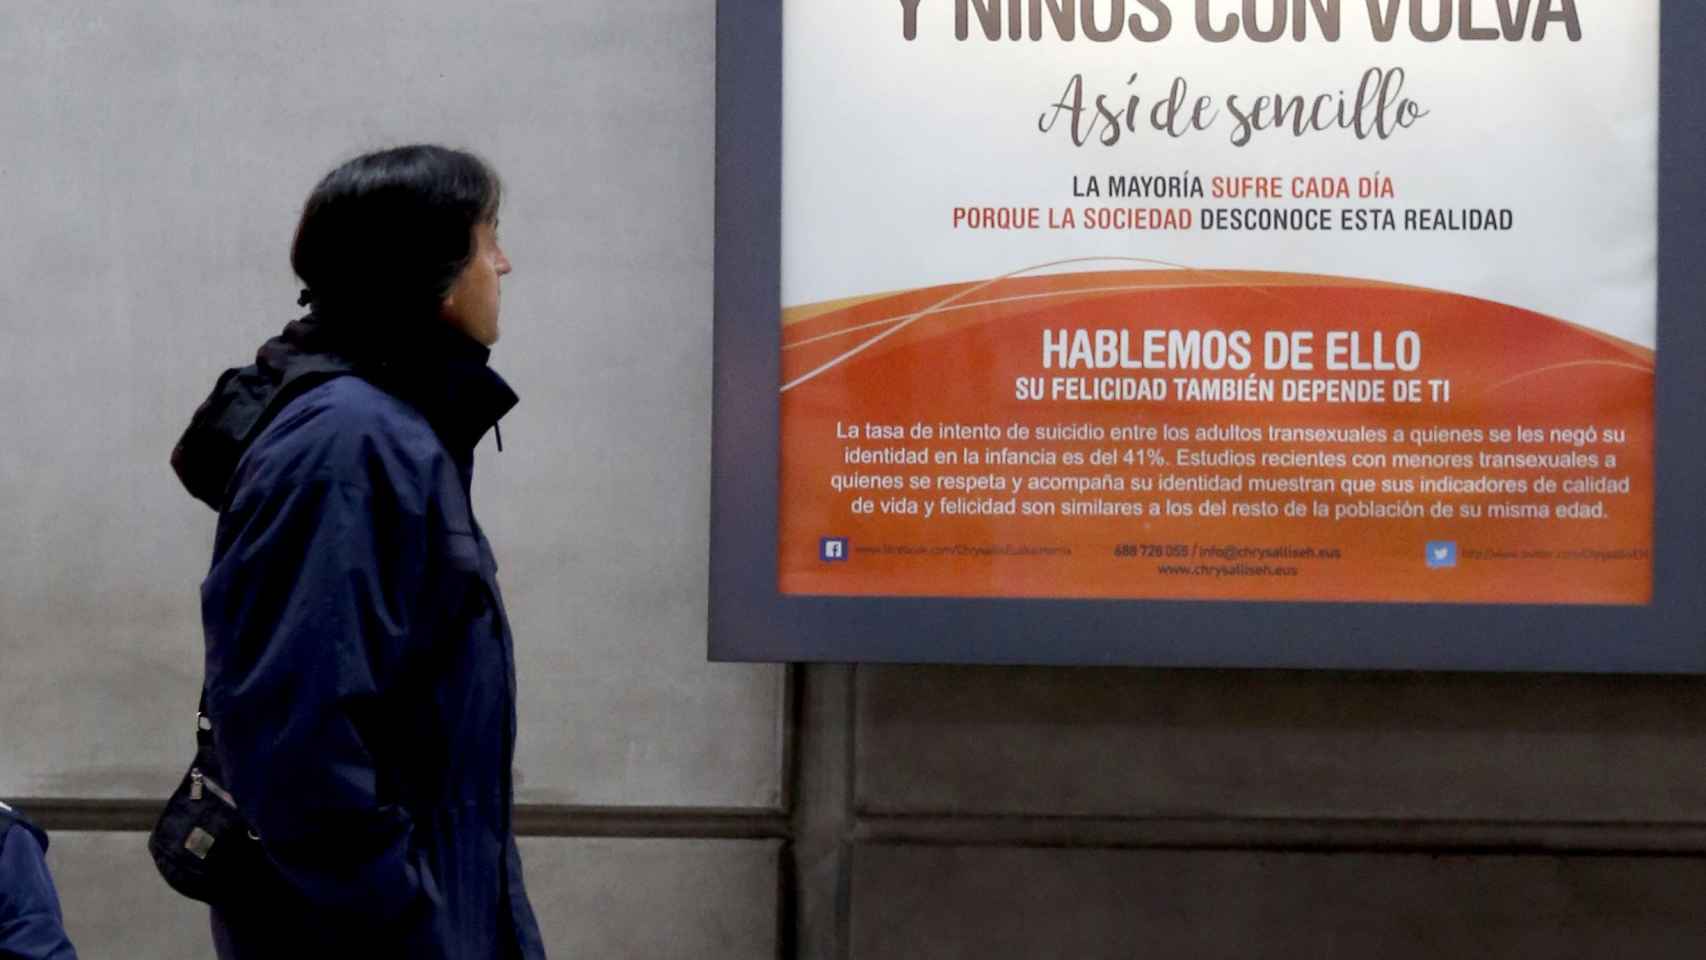 Un hombre pasa ante el cartel promovido por la asociación Chrysallis Euskal Herria